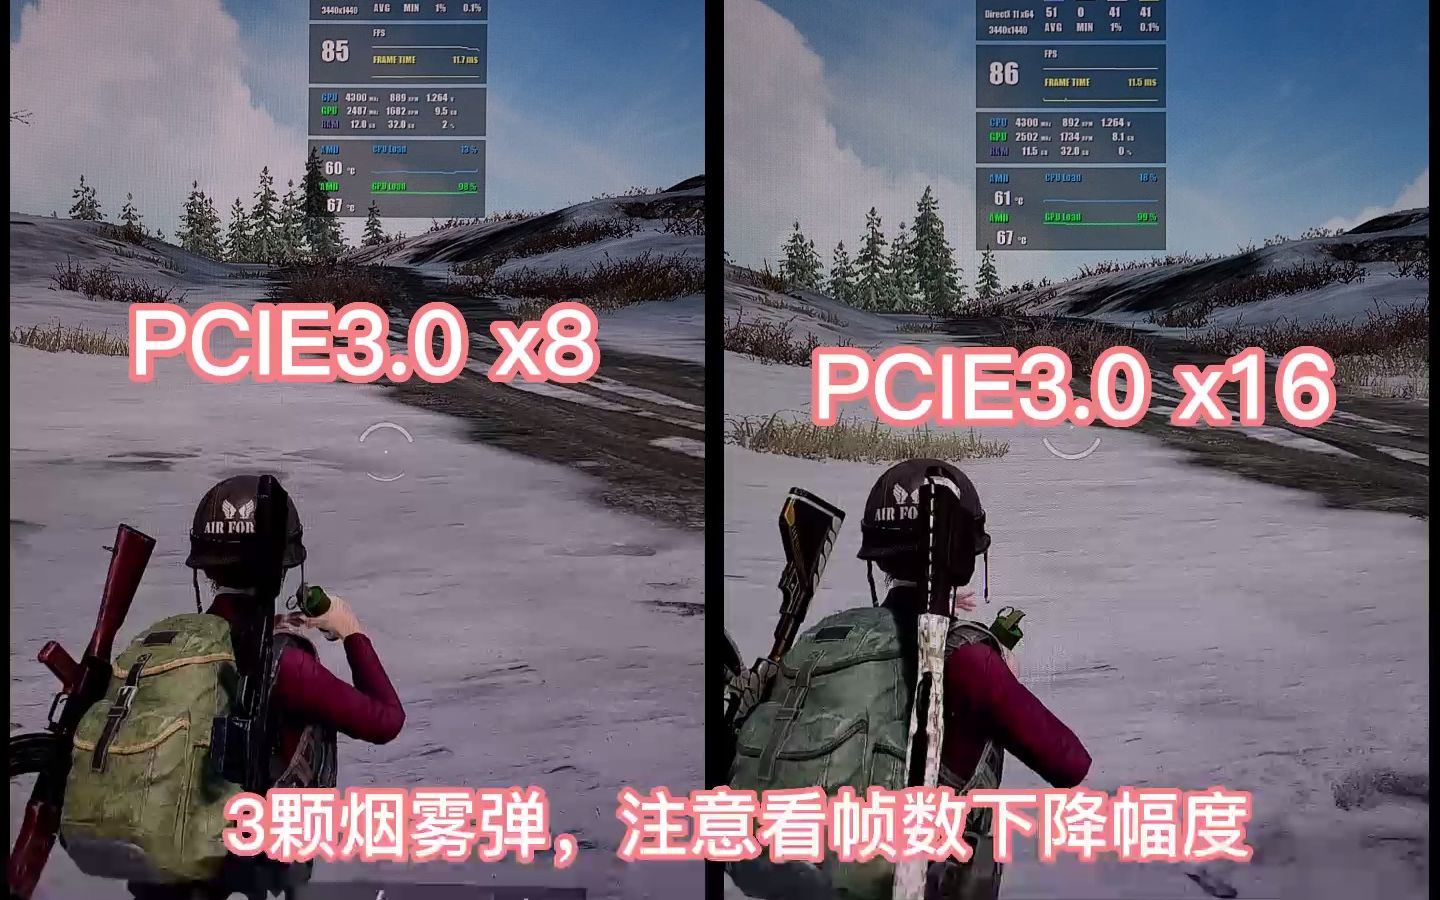 【区别很大！】PCIE3.0 x8 和 PCIE3.0 X16 显卡性能对比